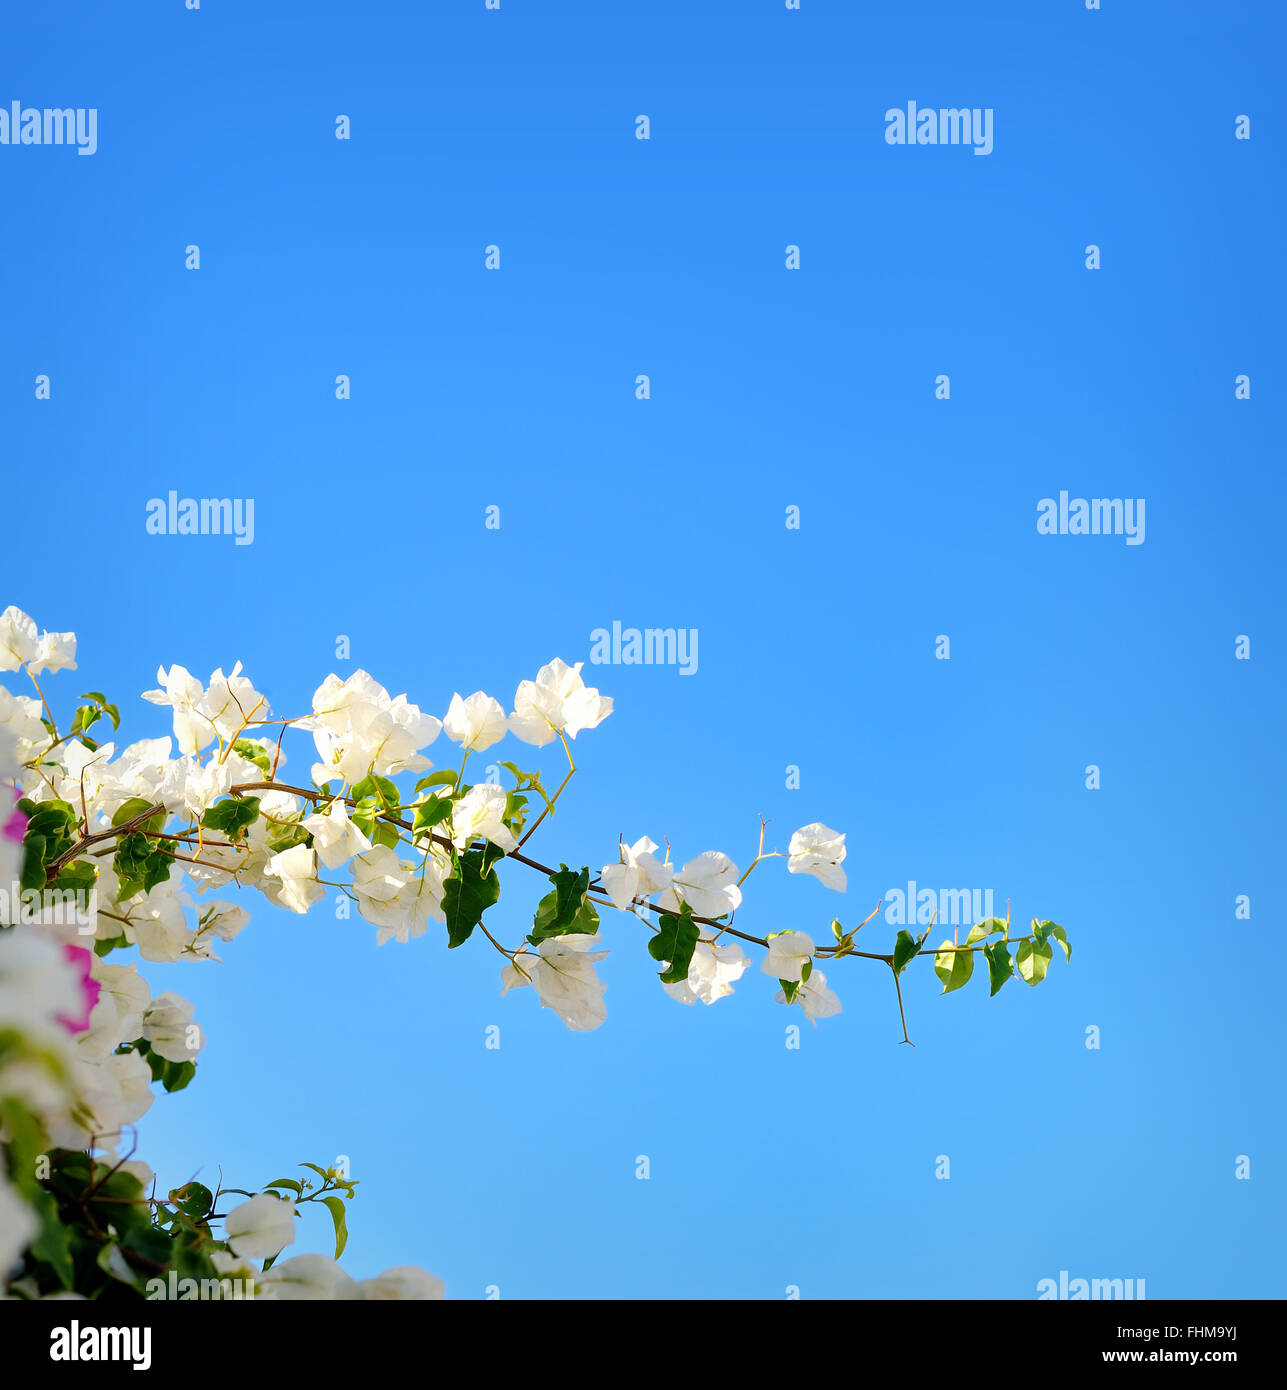 Printemps en fleurs les branches d'arbres avec des fleurs blanches sur le ciel bleu, la frontière abstraite nature background Banque D'Images